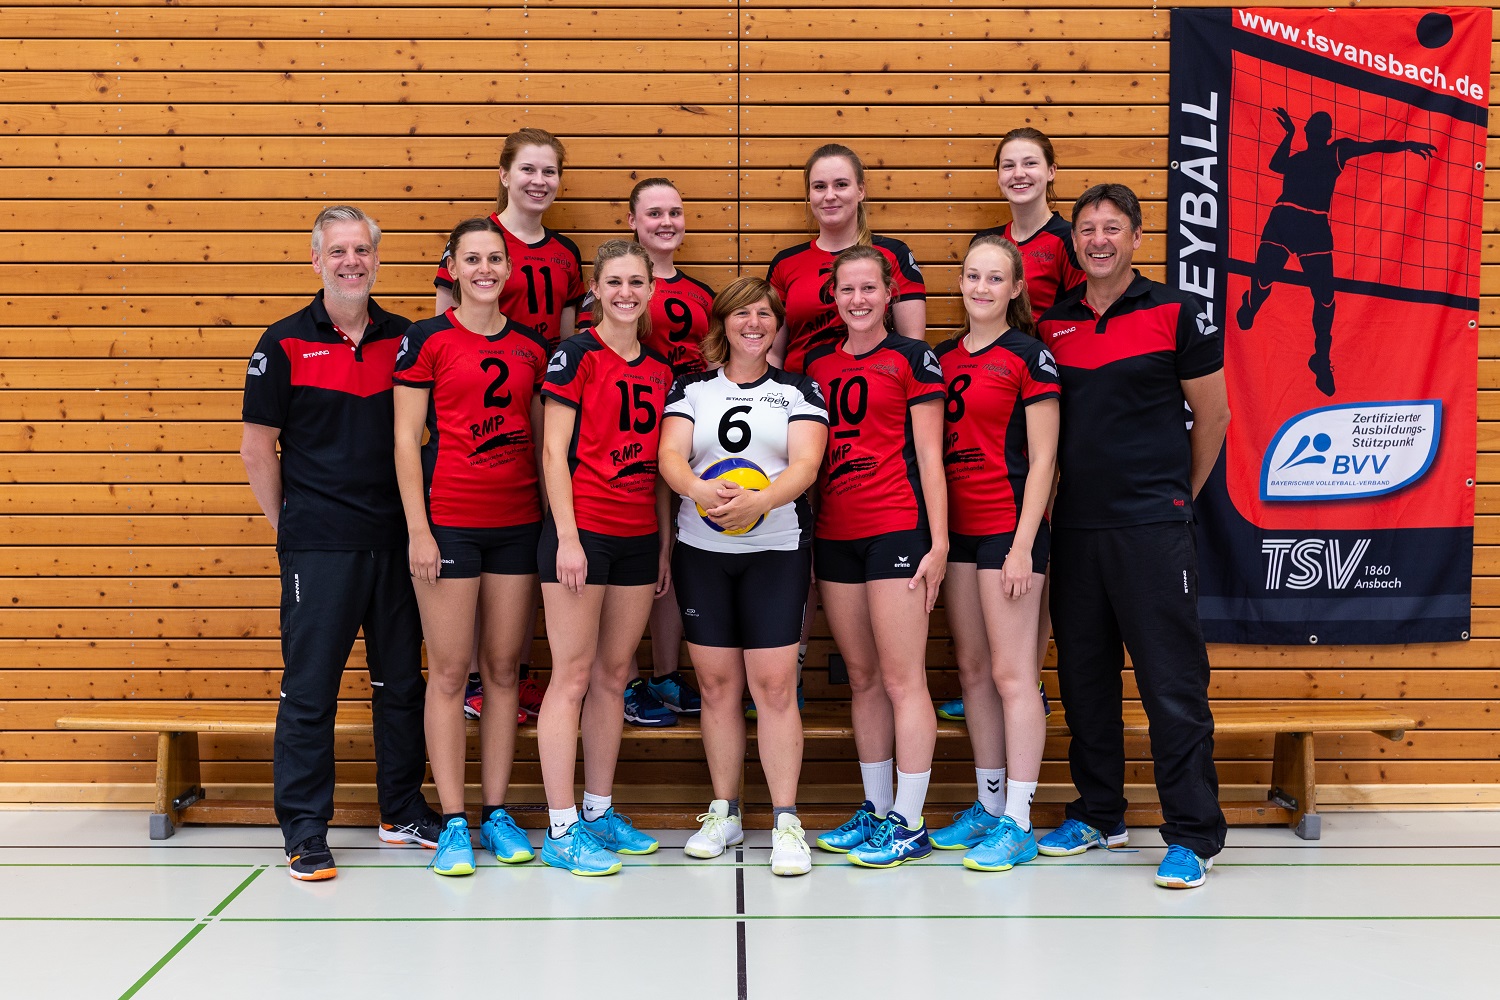 Verheißungsvoller Turnierauftakt für Ansbacher Volleyballerinnen in Regenstauf